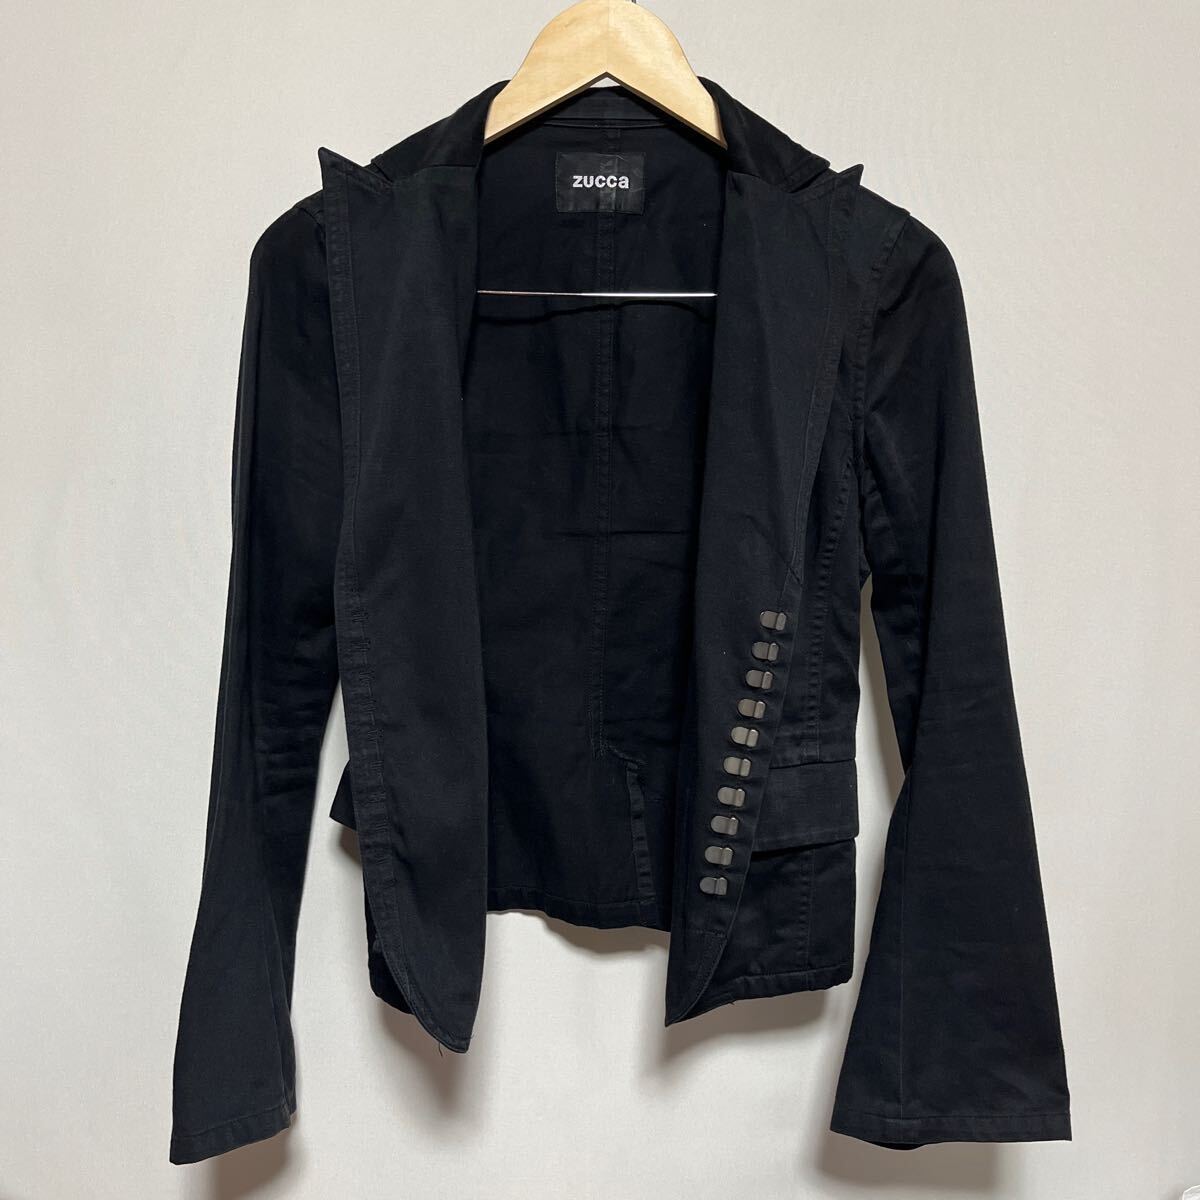 FA38hh  сделано в Японии 【ZUCCa｜...】 размер   S  черный  ... пиджак   женский   хлопок  100%  бу одежда  ... сетка  ...